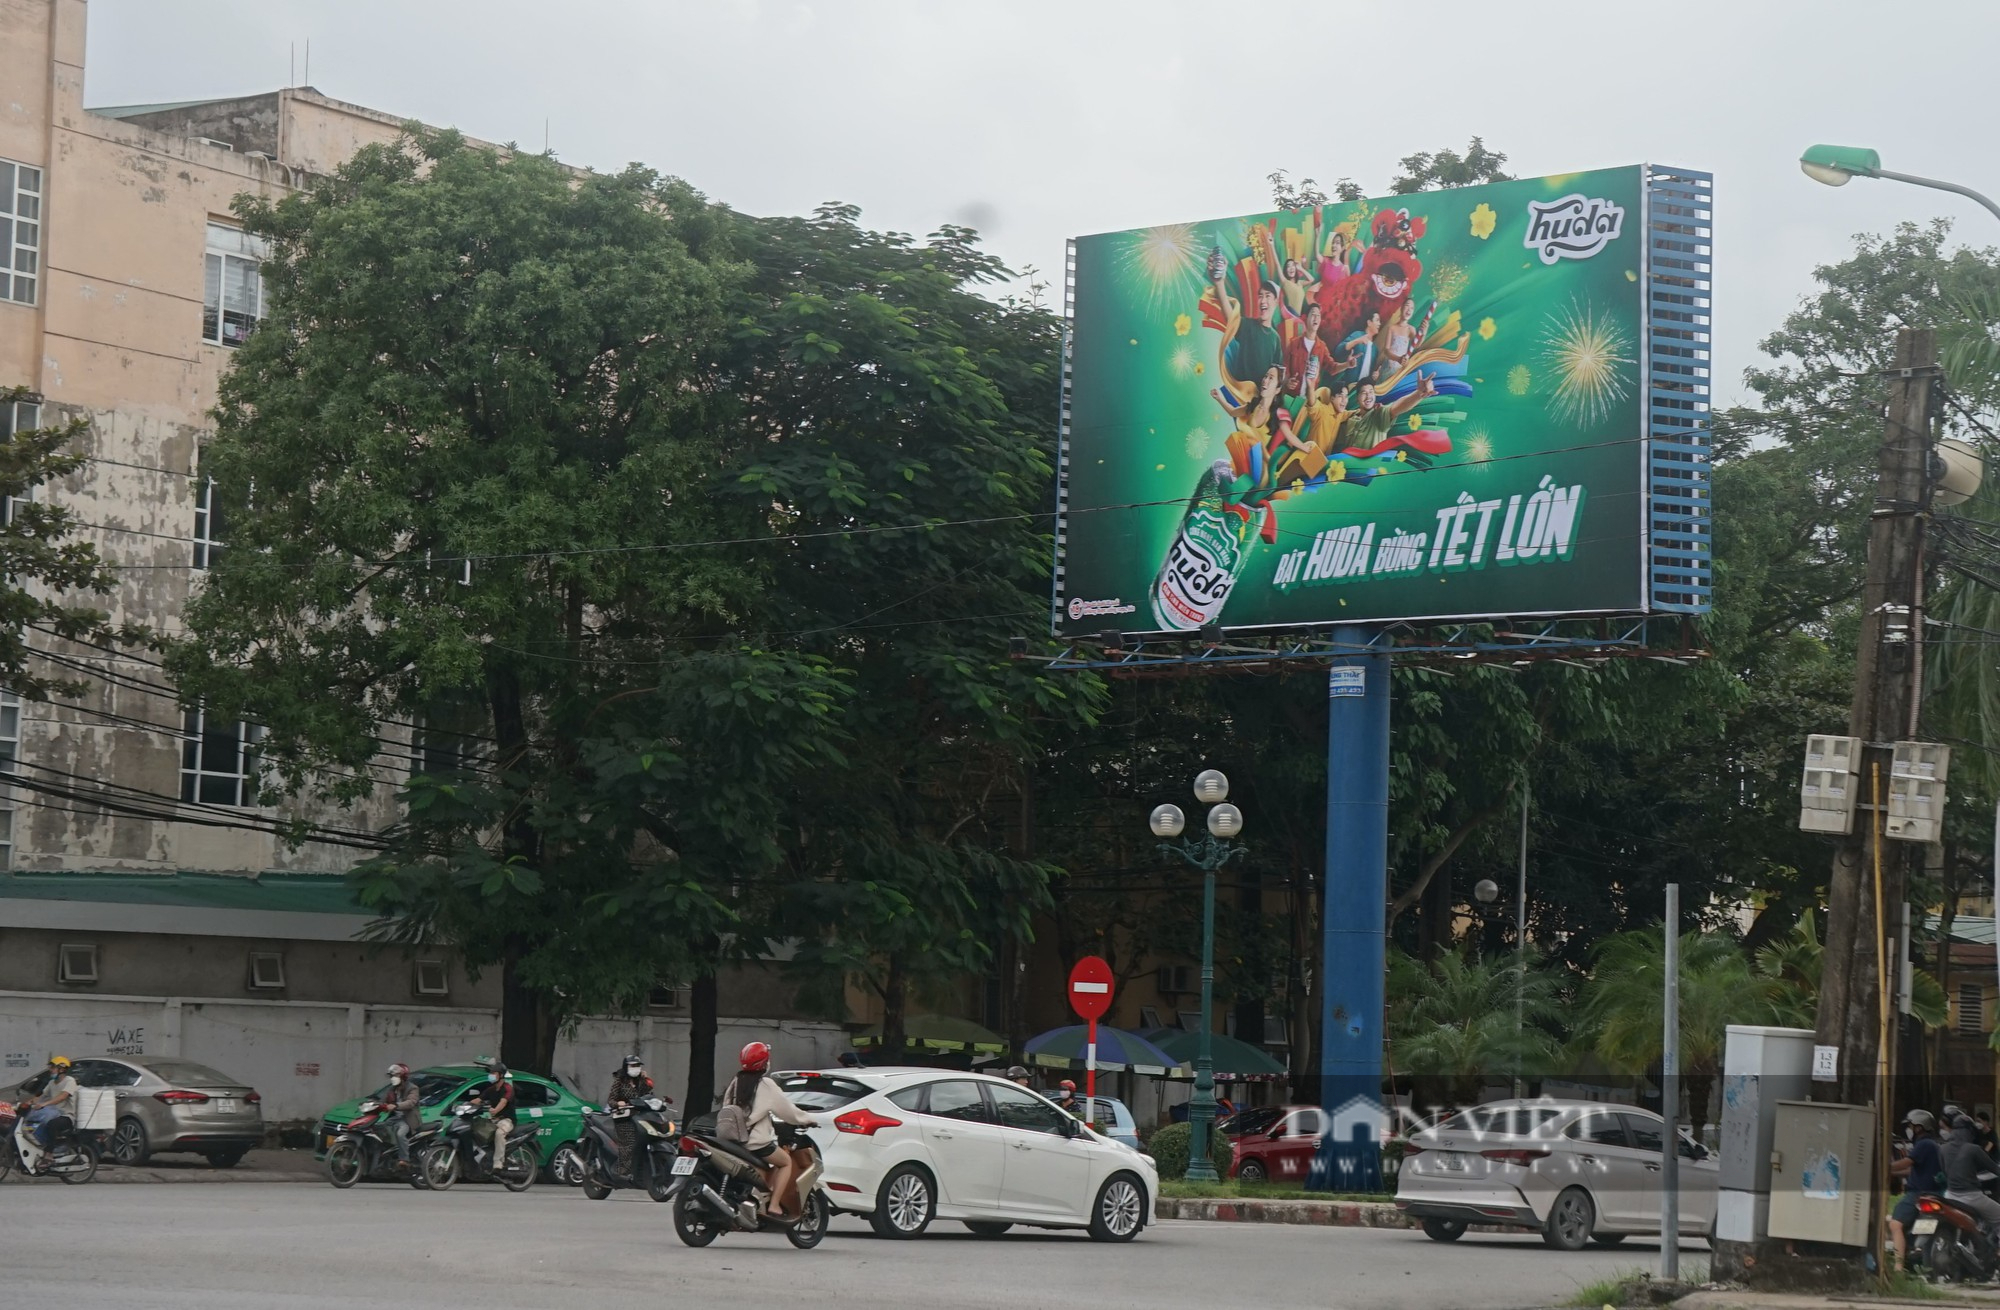 Loạn ma trận biển quảng cáo ở thành phố Vinh, Nghệ An - Ảnh 2.